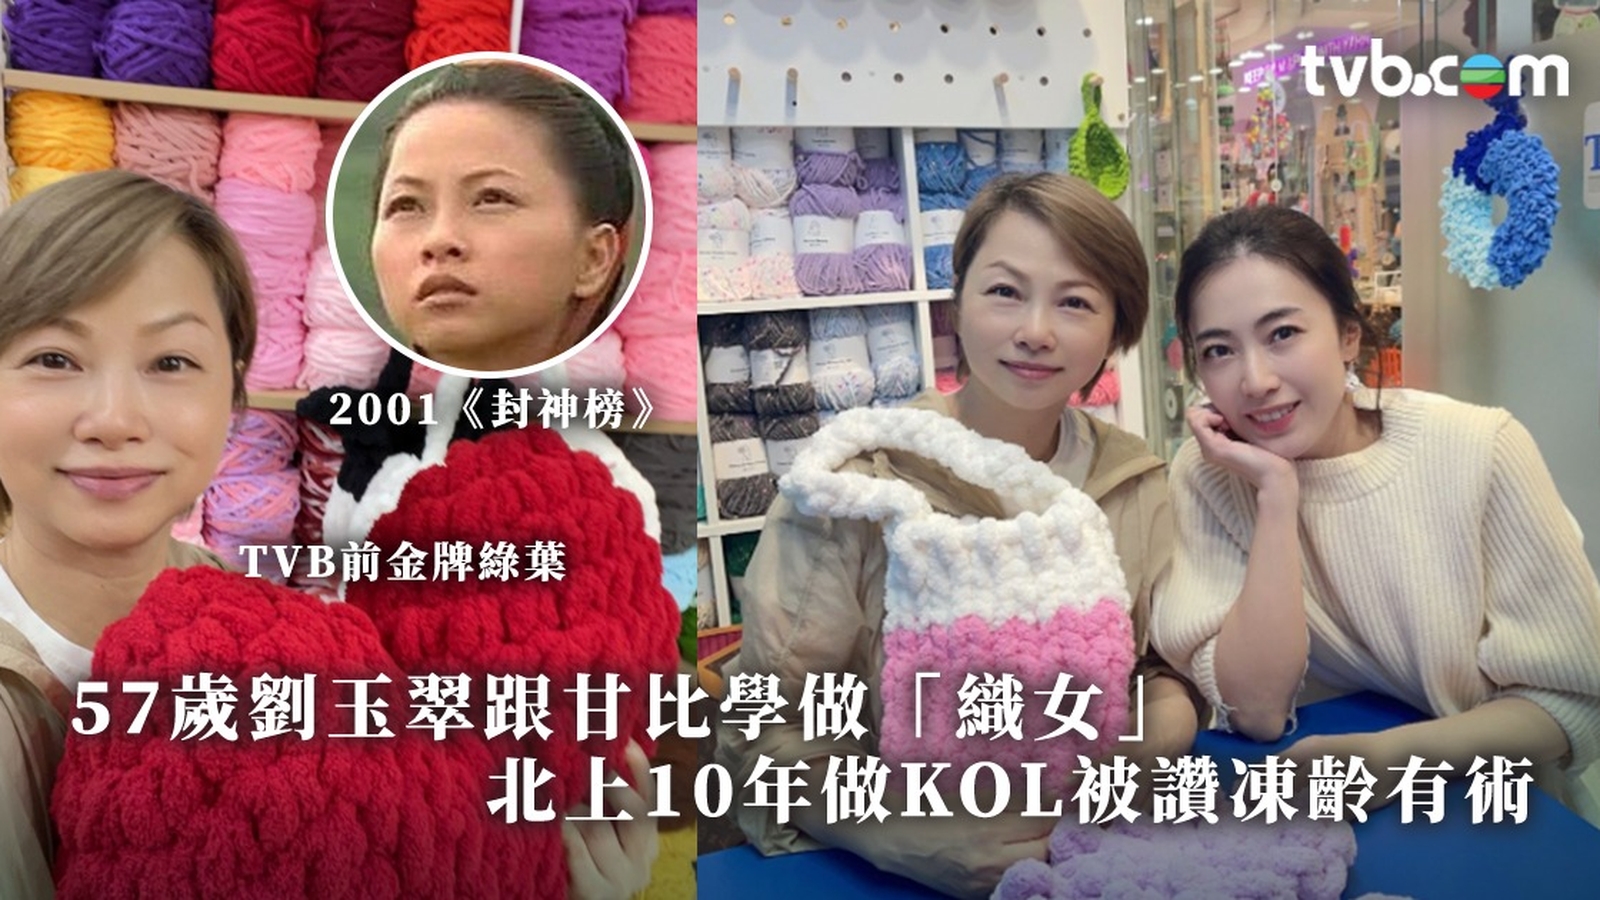 TVB前金牌綠葉劉玉翠跟甘比學做「織女」 北上發展10年躋身KOL被讚凍齡有術